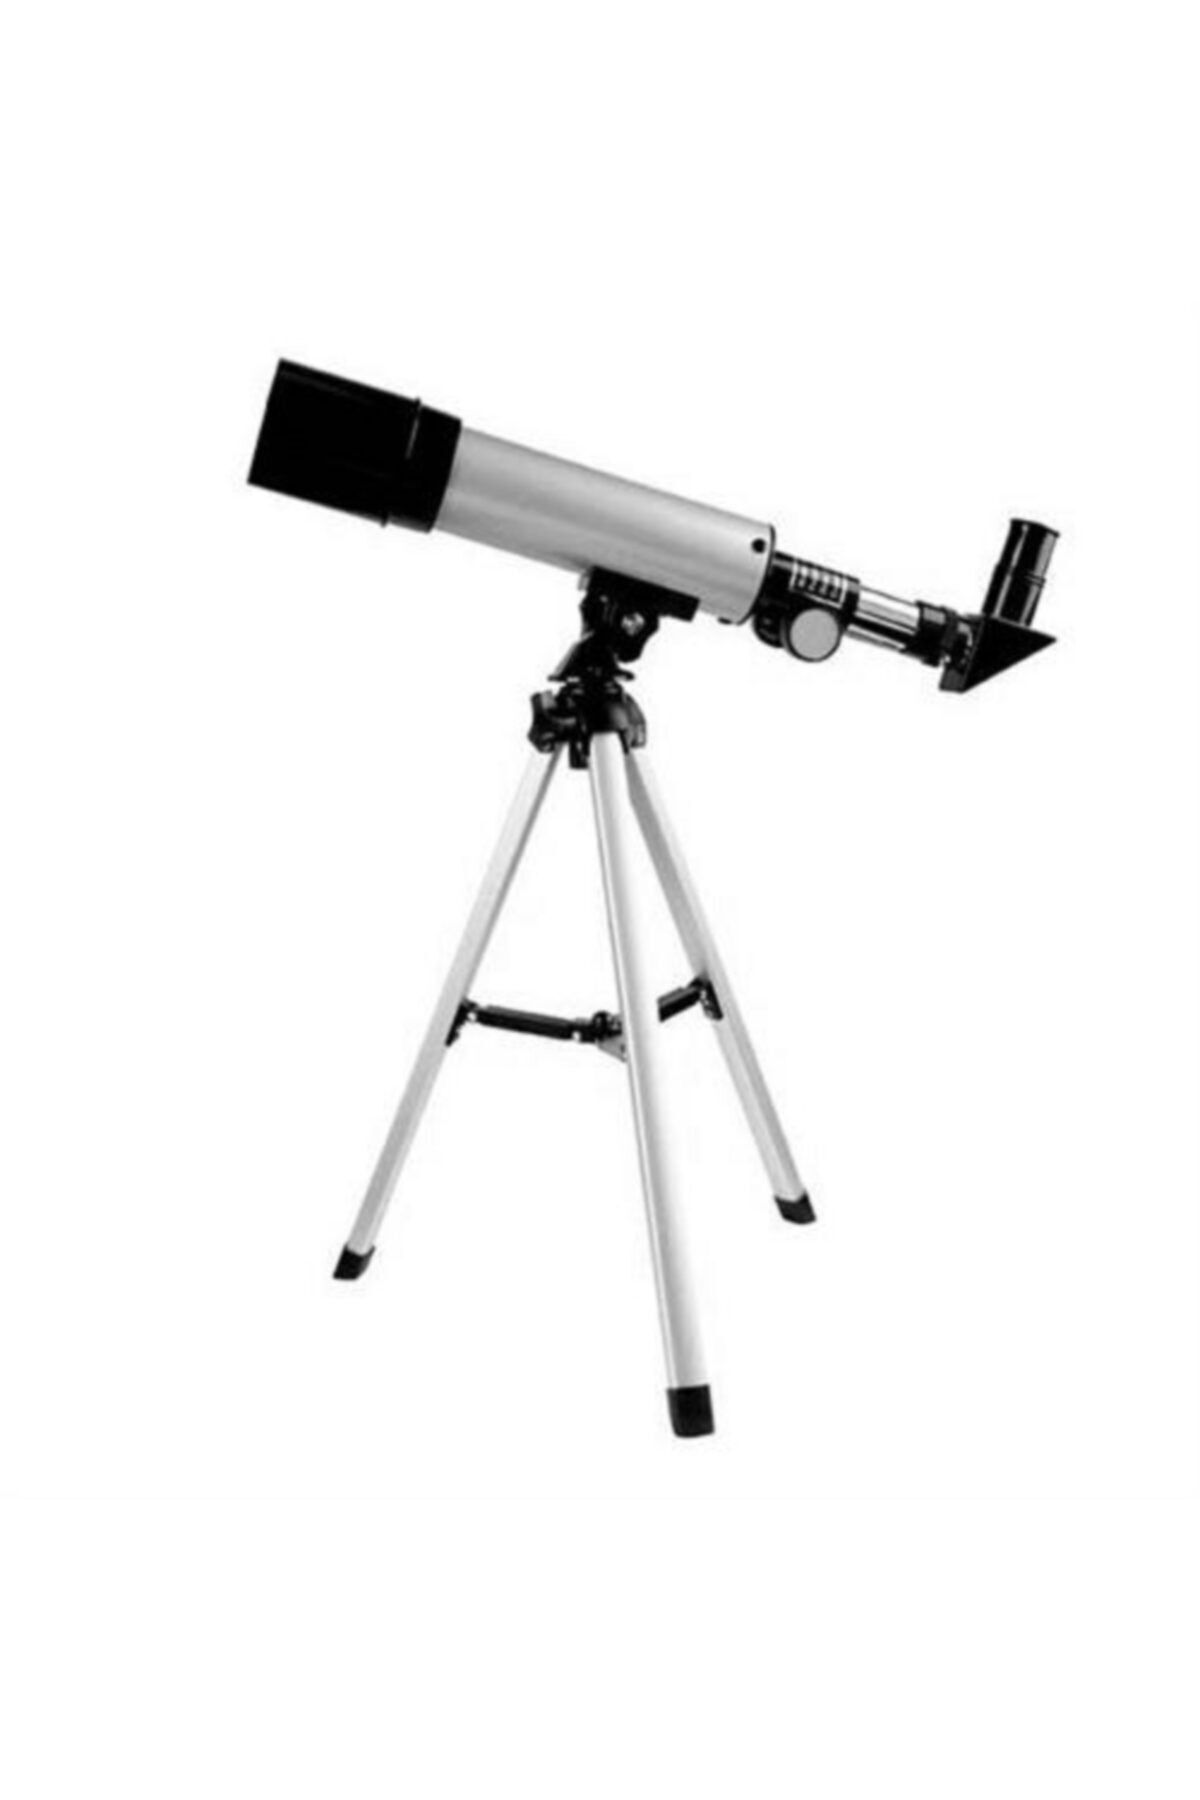 Genel Markalar Mini Teleskop 50X360 - Kara Uzay Teleskobu - Aliminyum Gövde Tripodlu